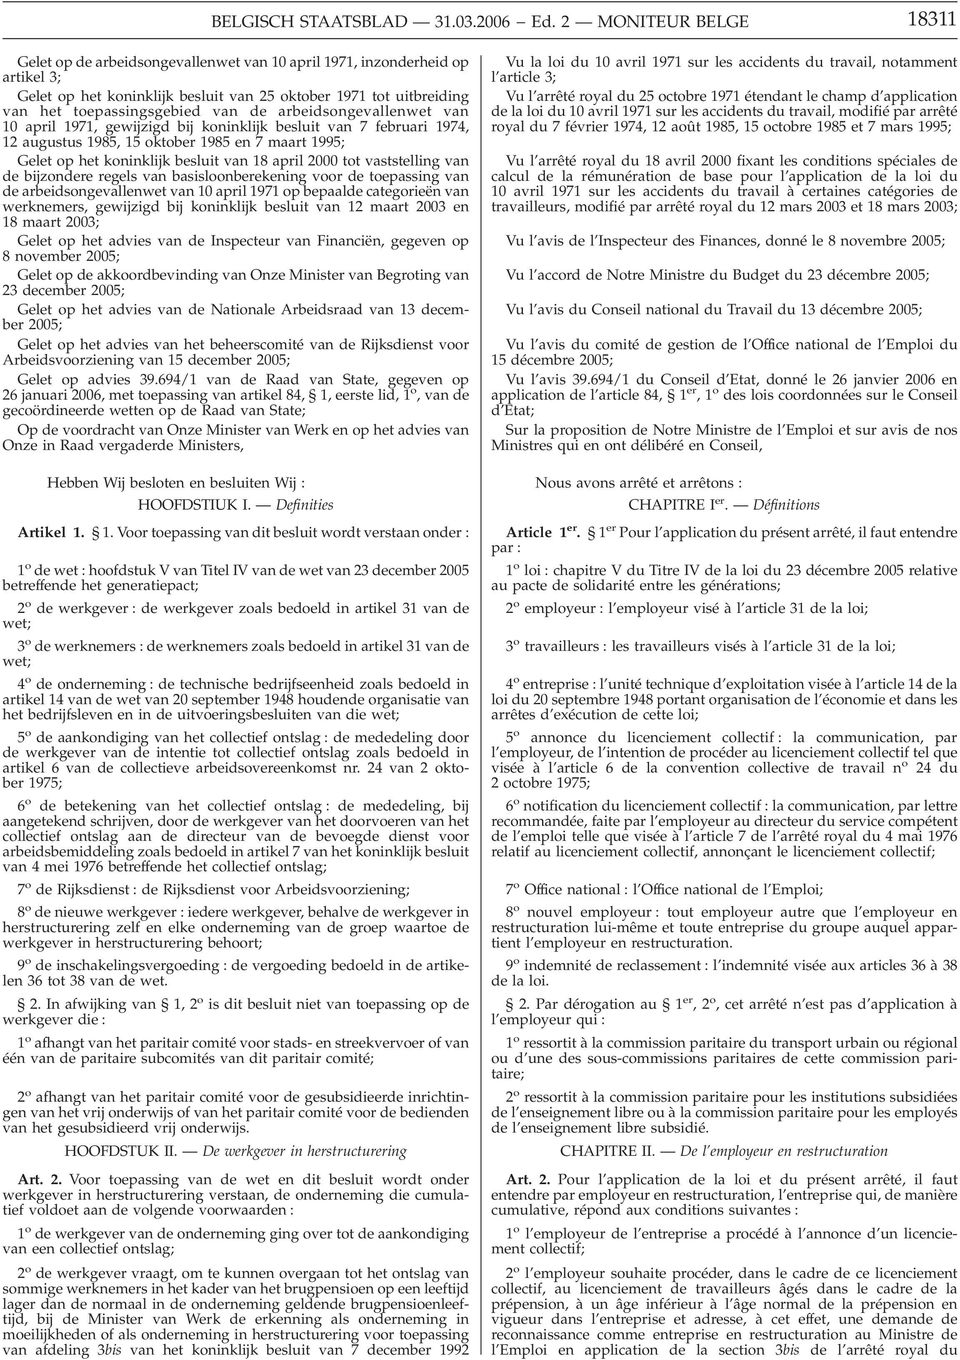 vaststelling van de bijzondere regels van basisloonberekening voor de toepassing van de arbeidsongevallenwet van 10 april 1971 op bepaalde categorieën van werknemers, gewijzigd bij koninklijk besluit